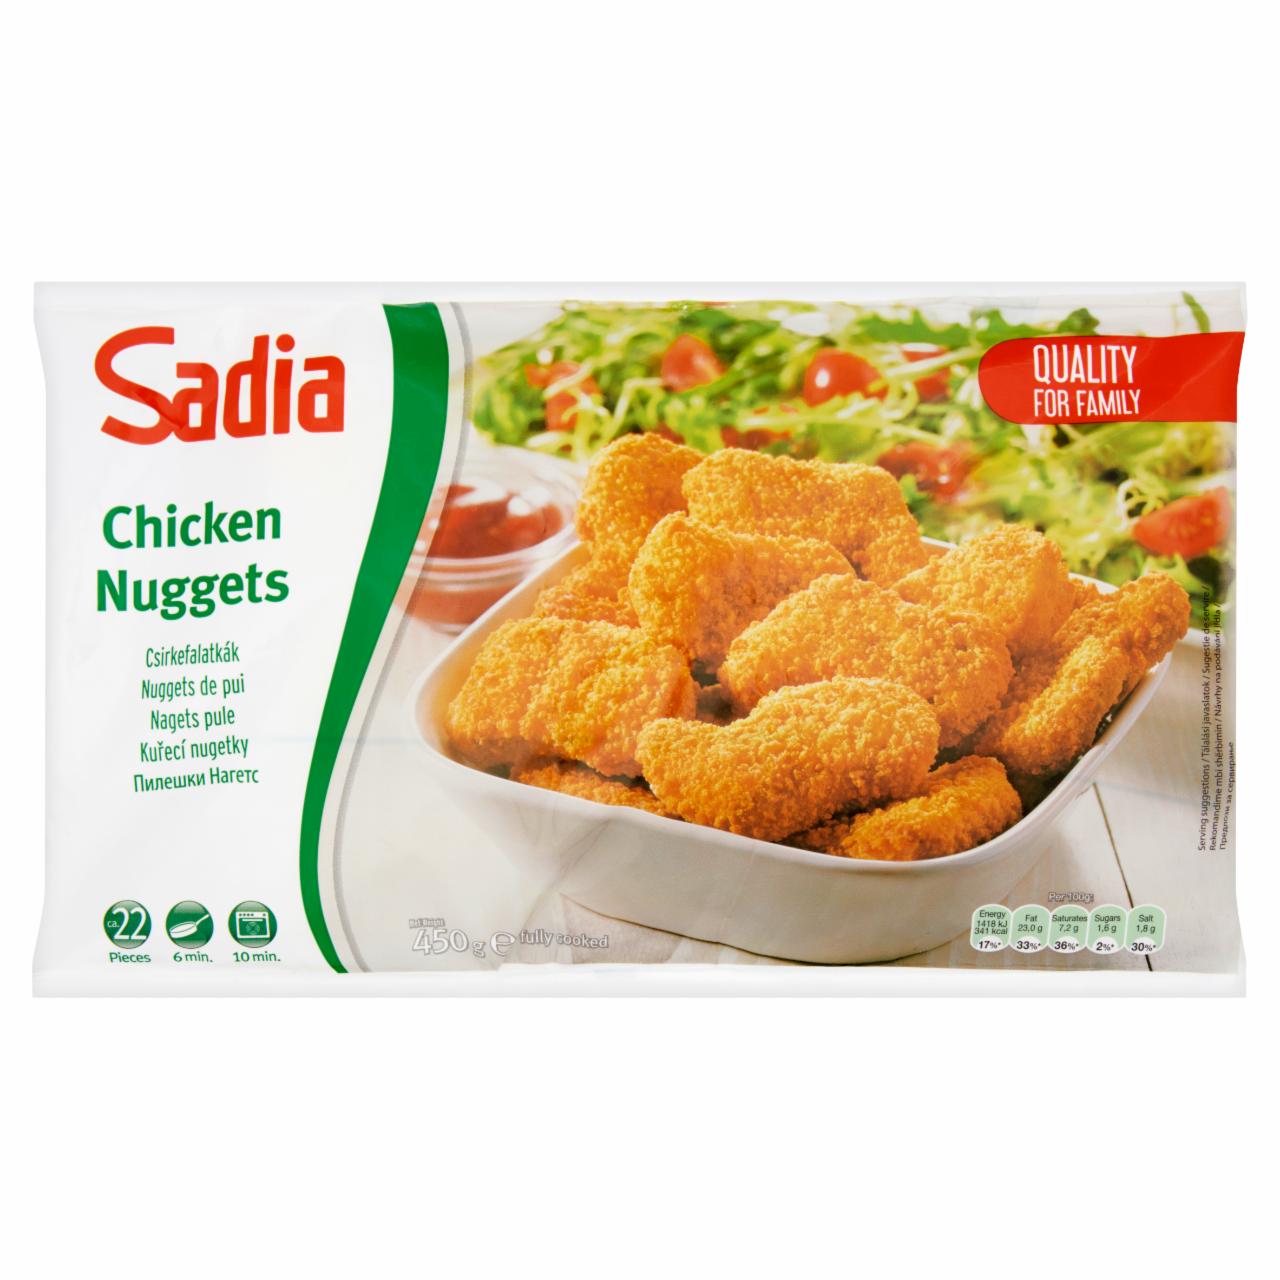 Képek - Sadia gyorsfagyasztott, elősütött, panírozott csirkefalatkák 450 g